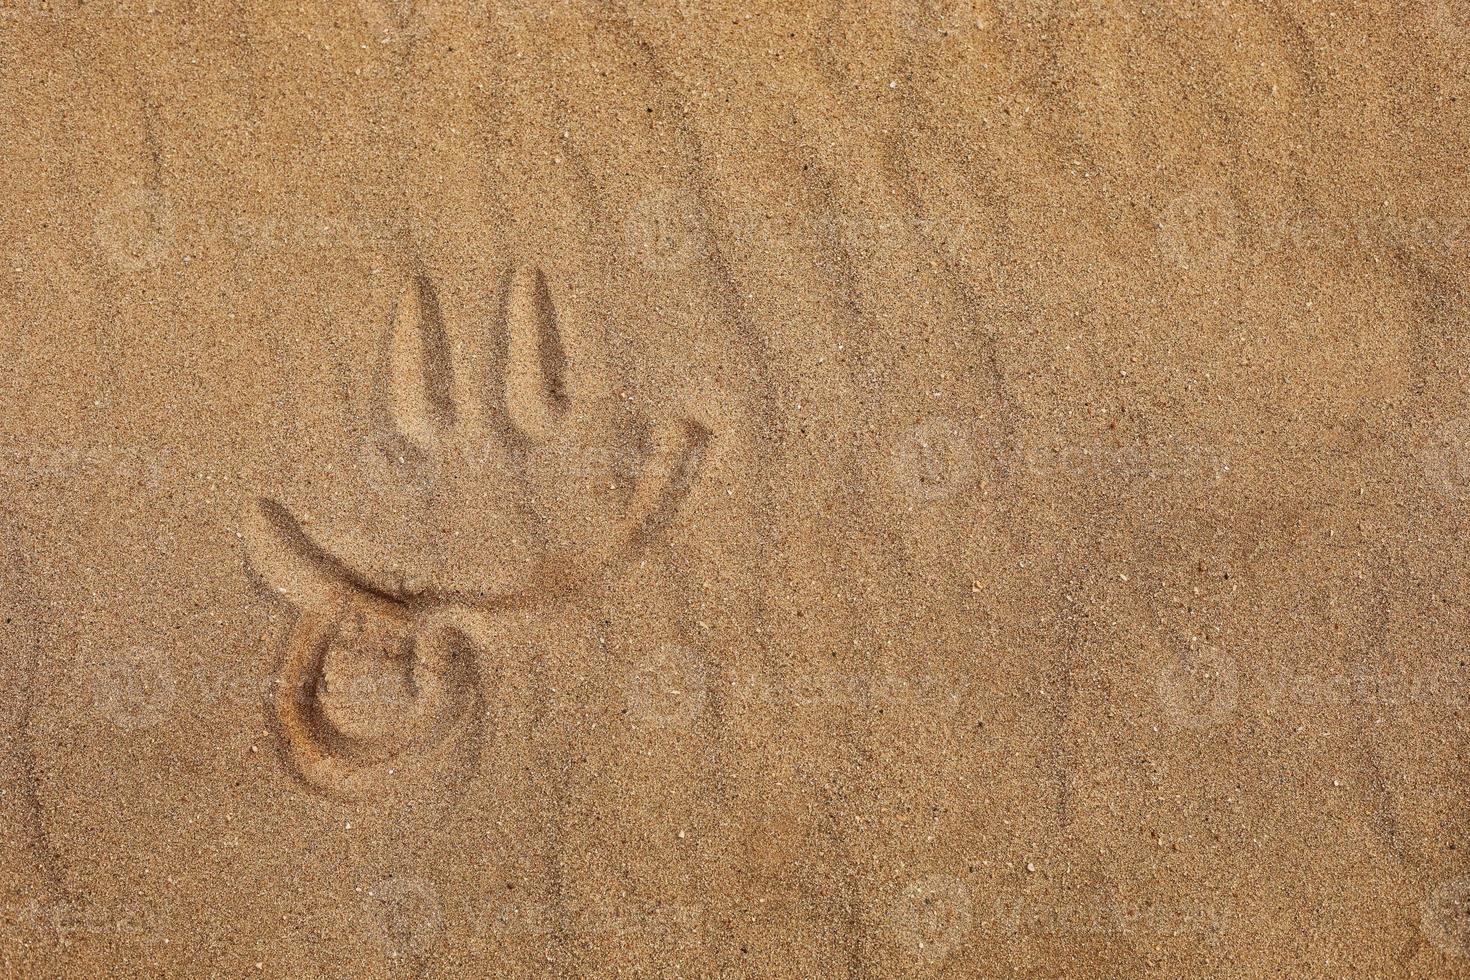 Visage souriant avec la langue faite par le doigt sur une plage de sable photo